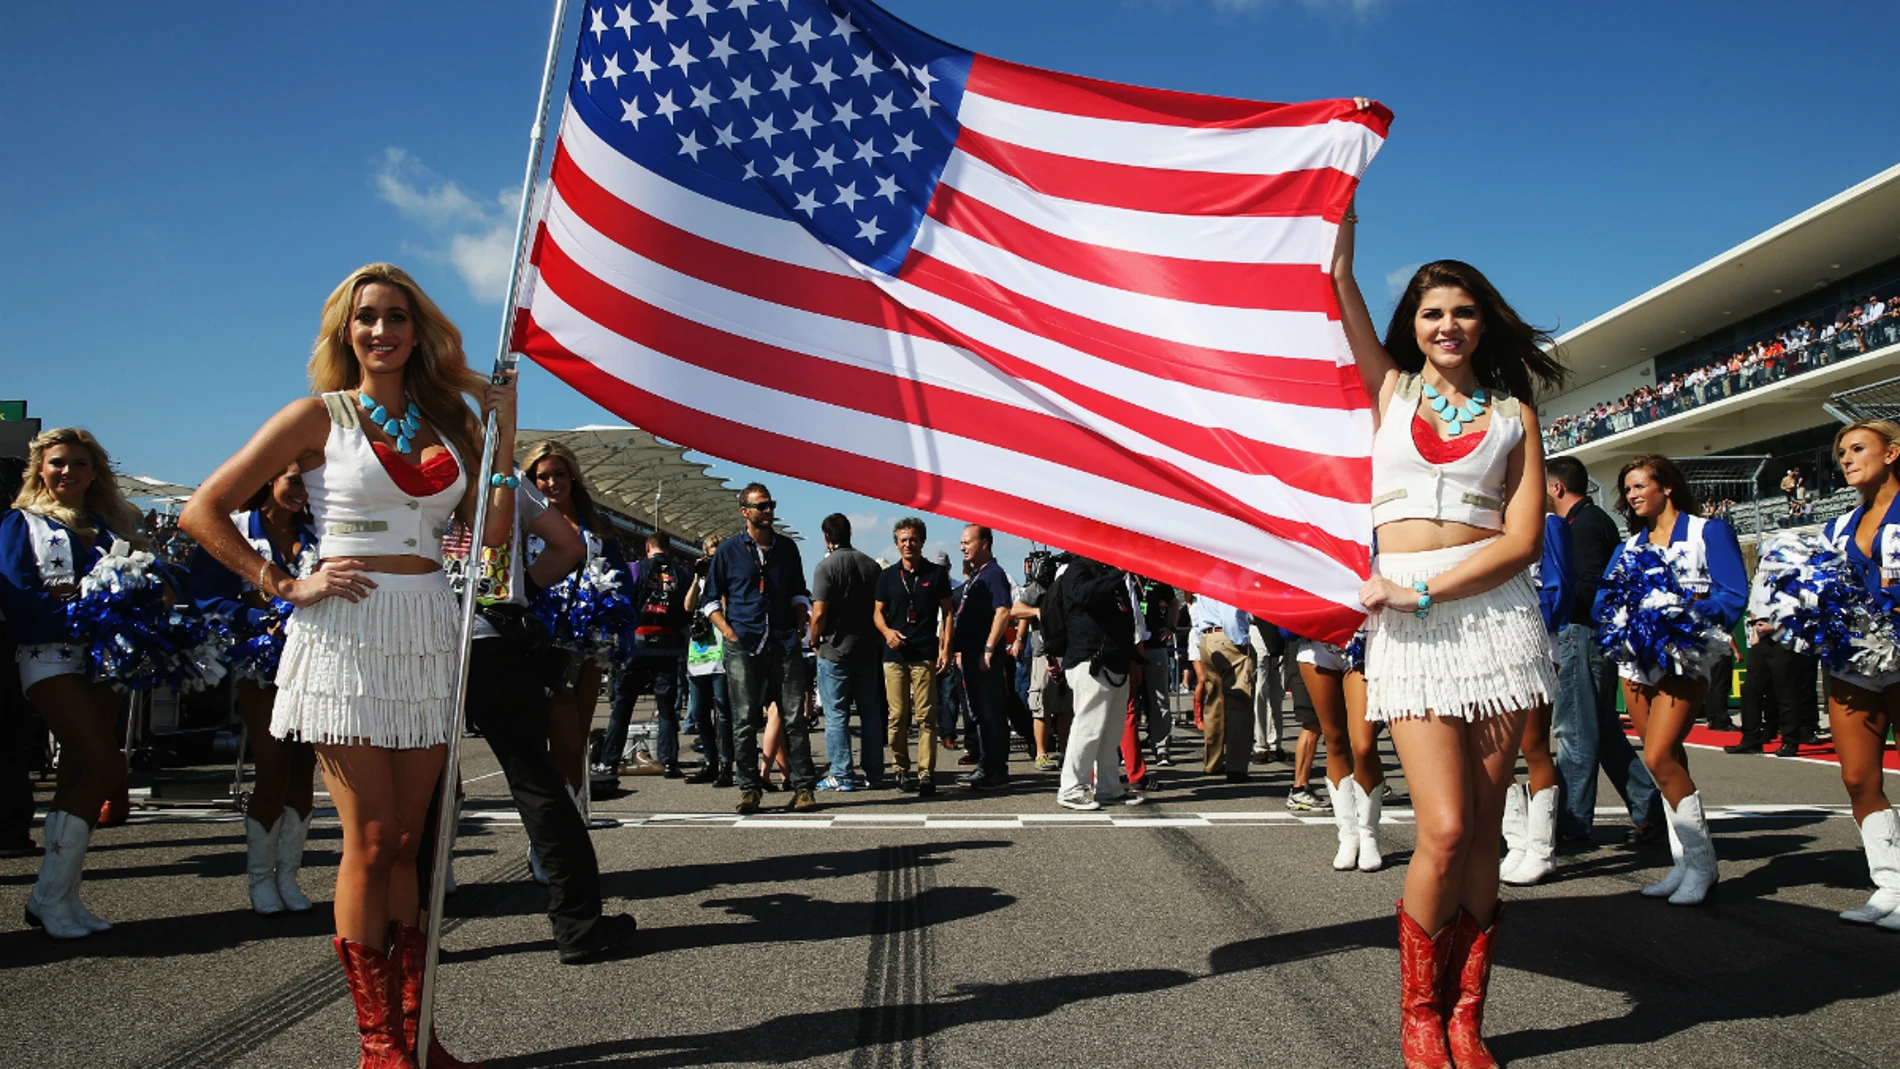 Unas chicas sujetan la bandera de EEUU